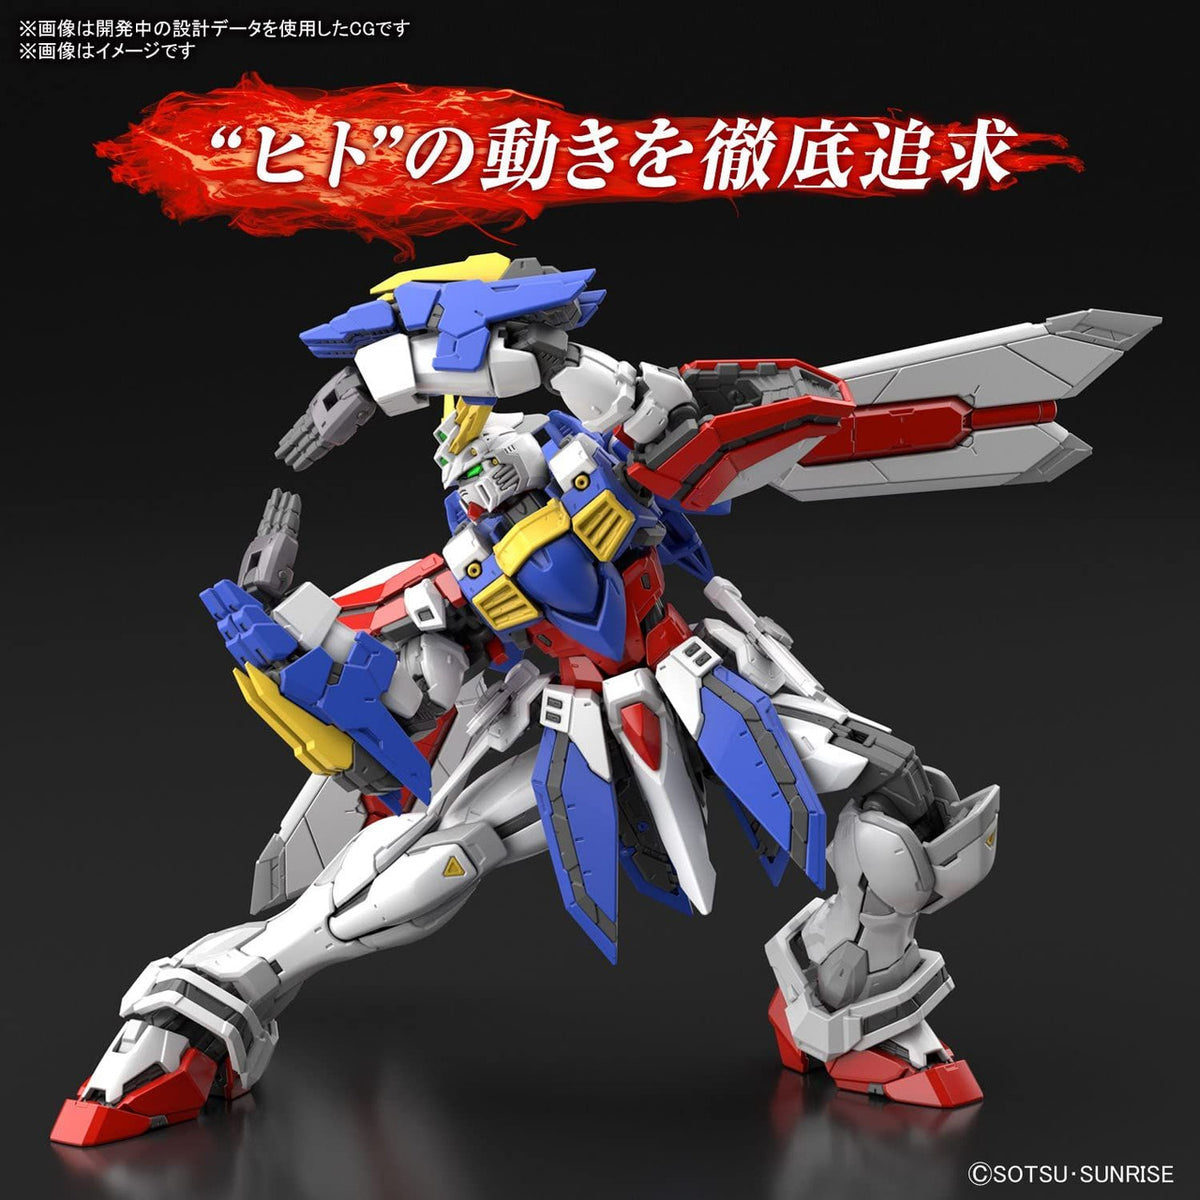 RG 1/144 God Gundam